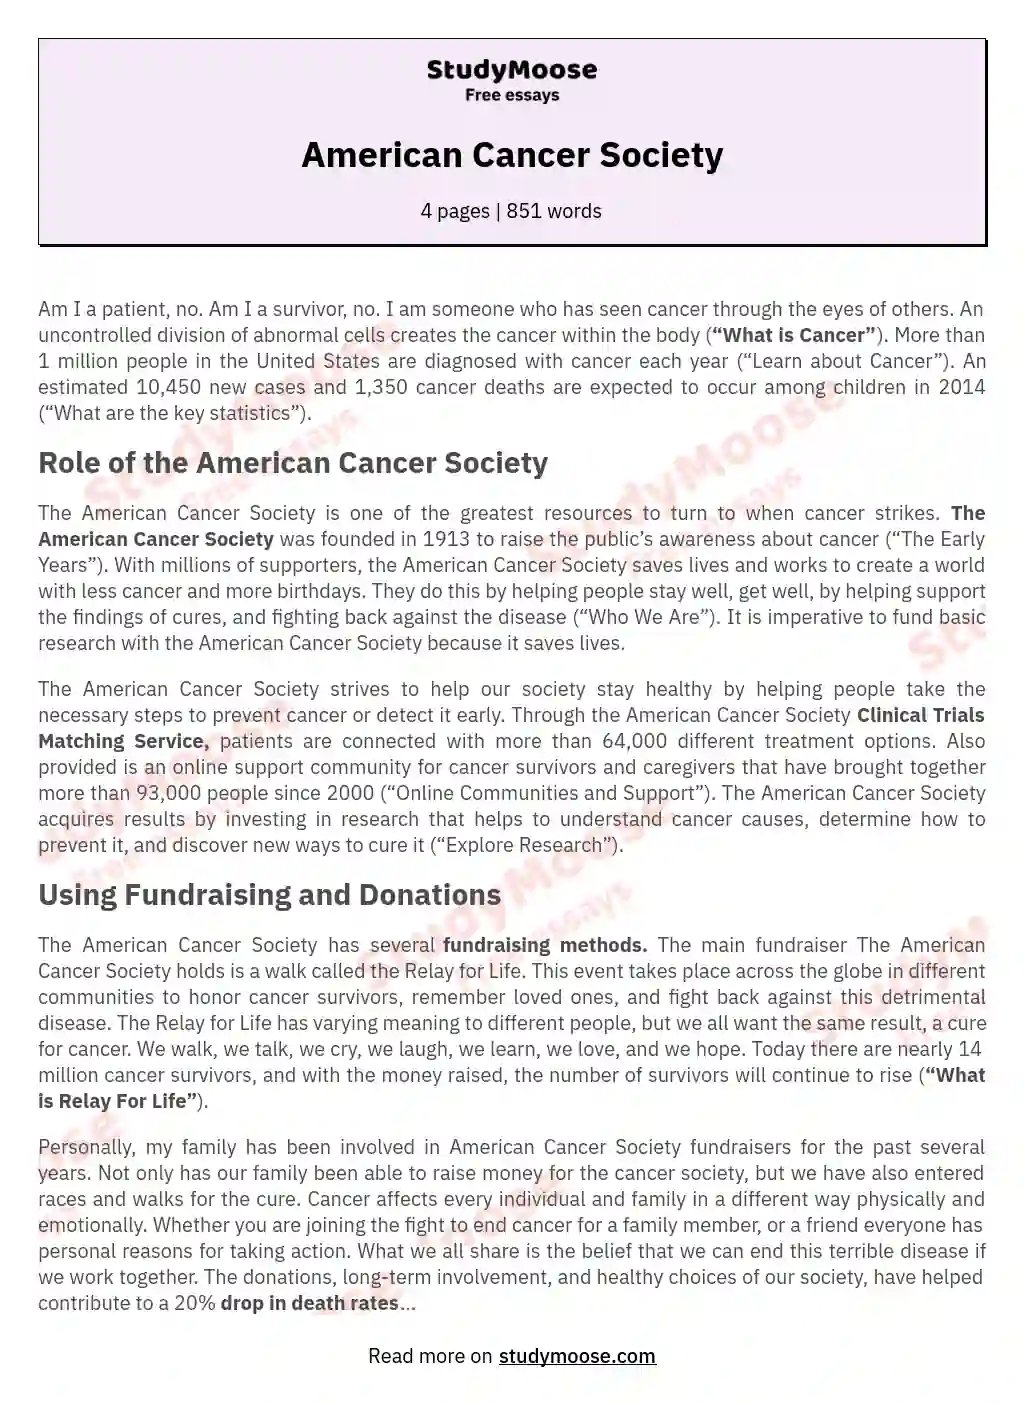 American Cancer Society essay